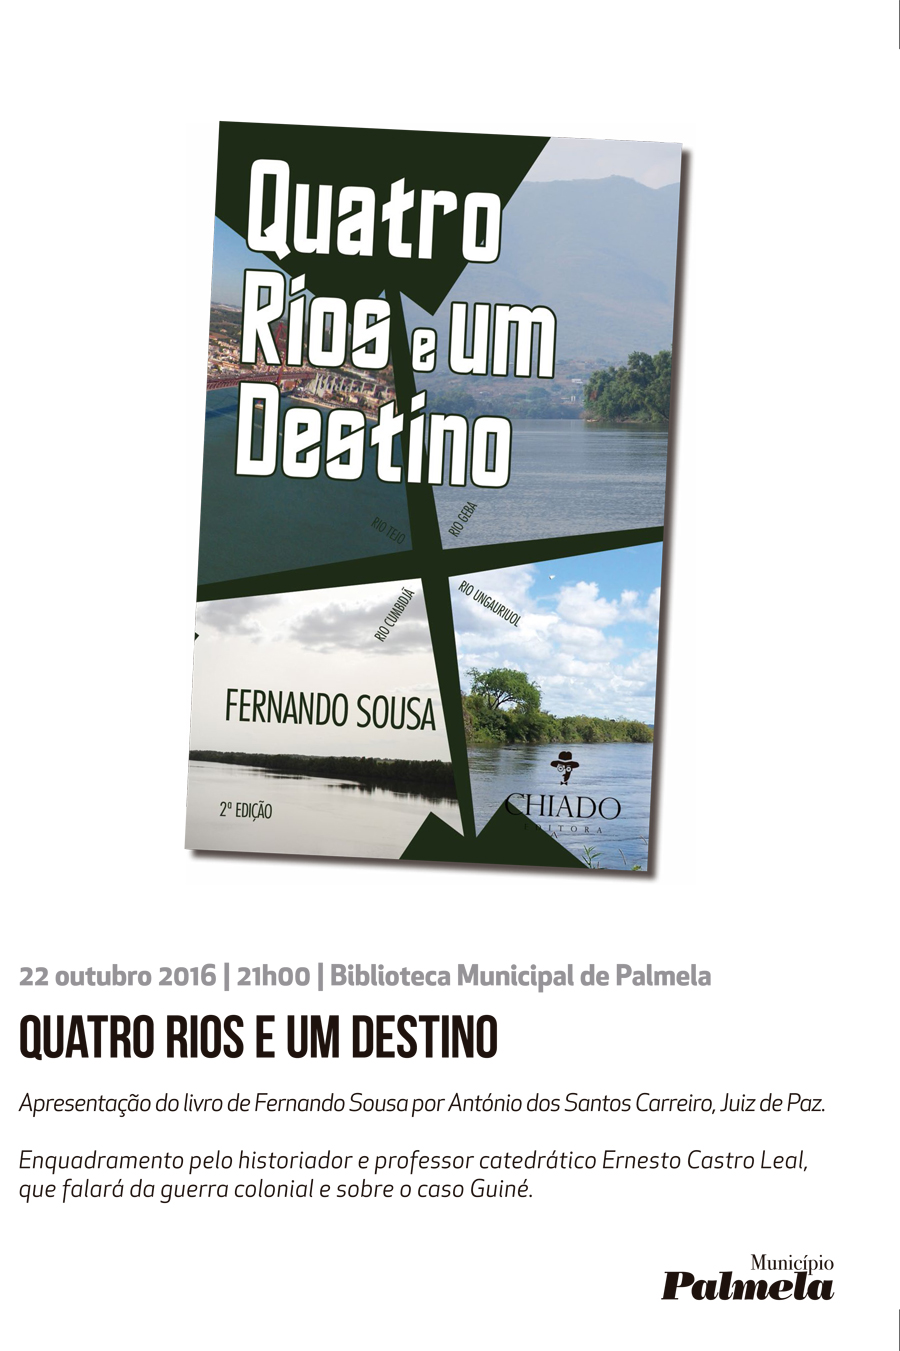 Fernando Sousa apresenta livro “Quatro rios e um destino” na Biblioteca Municipal de Palmela